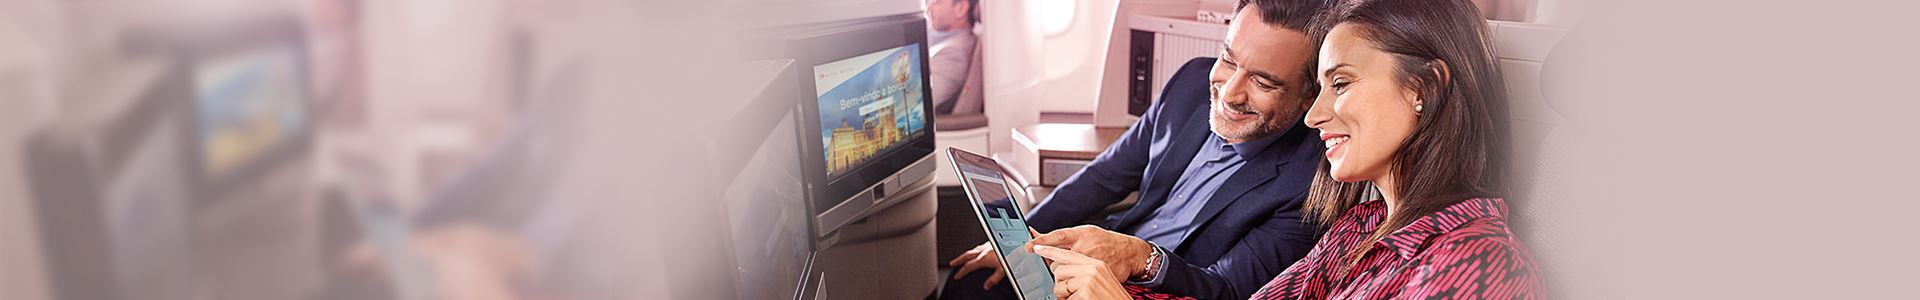 Primo piano di una donna e di un uomo sorridenti seduti a bordo di un aereo. La donna ha in mano un tablet e l'uomo lo sta guardando. Entrambi indicano lo schermo del tablet. Di fronte a loro ci sono due schermi, incorporati nei sedili dell'aereo.